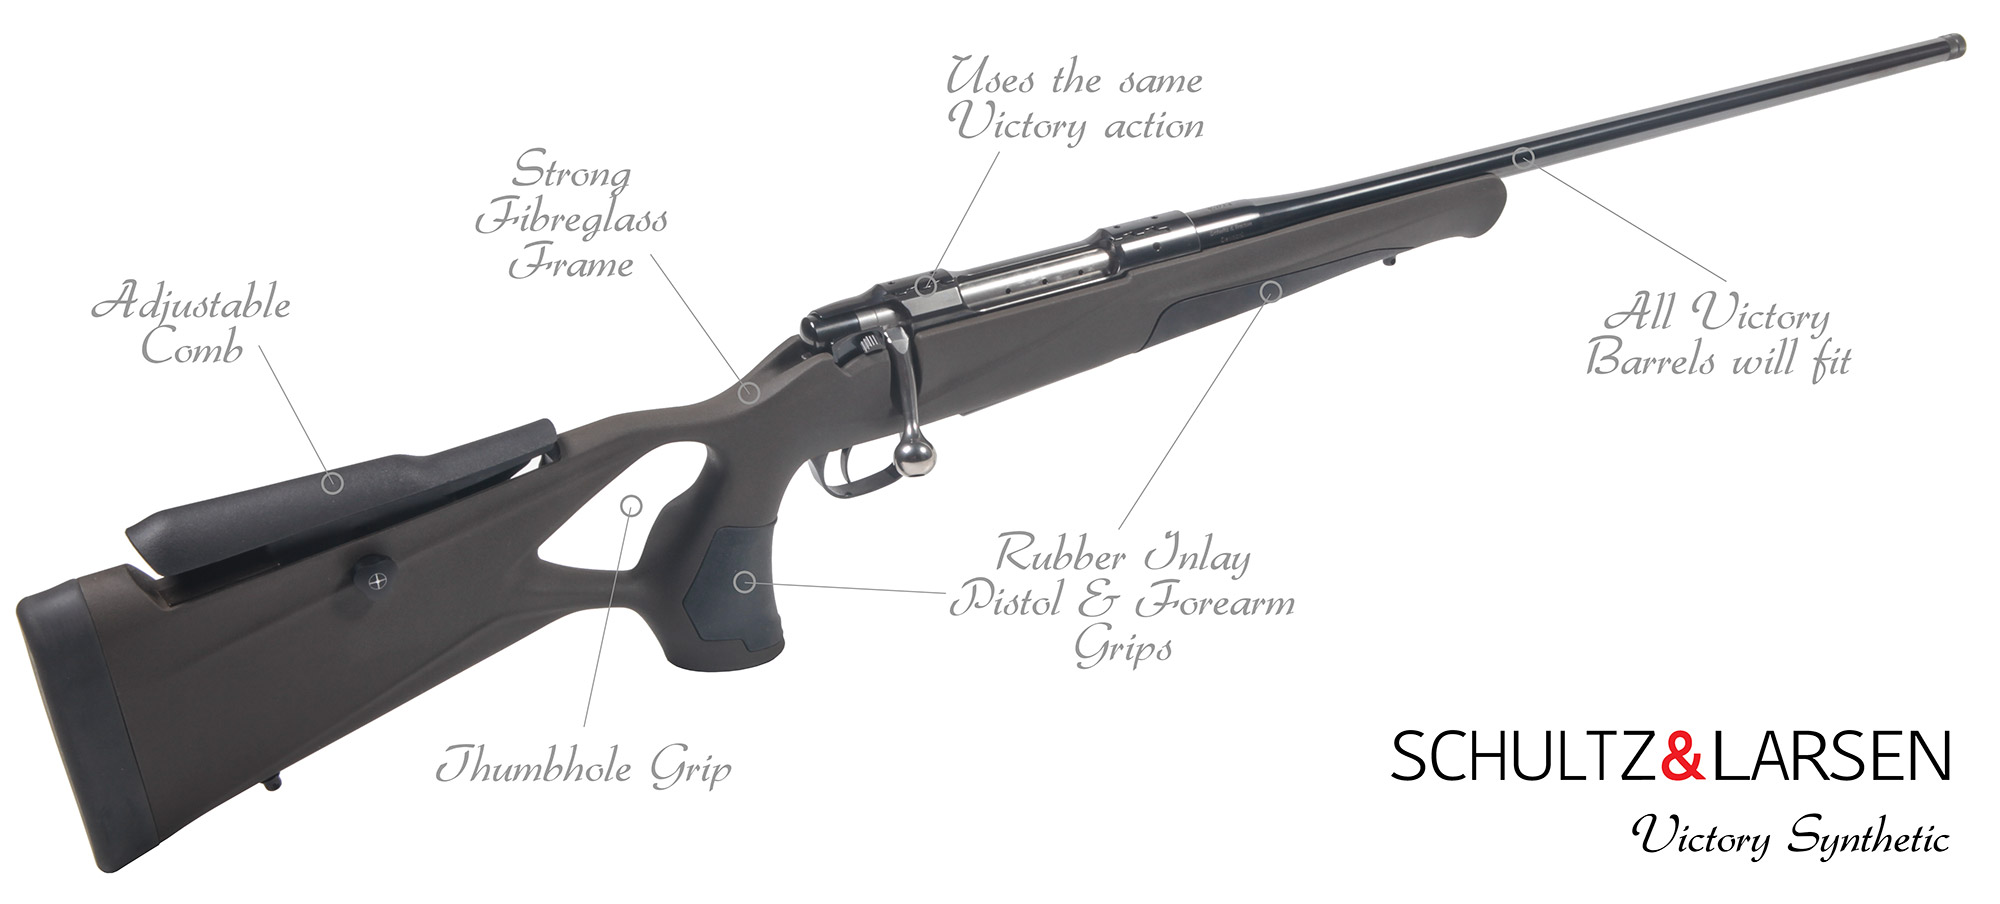 Schultz & Larsen Victory Rifle